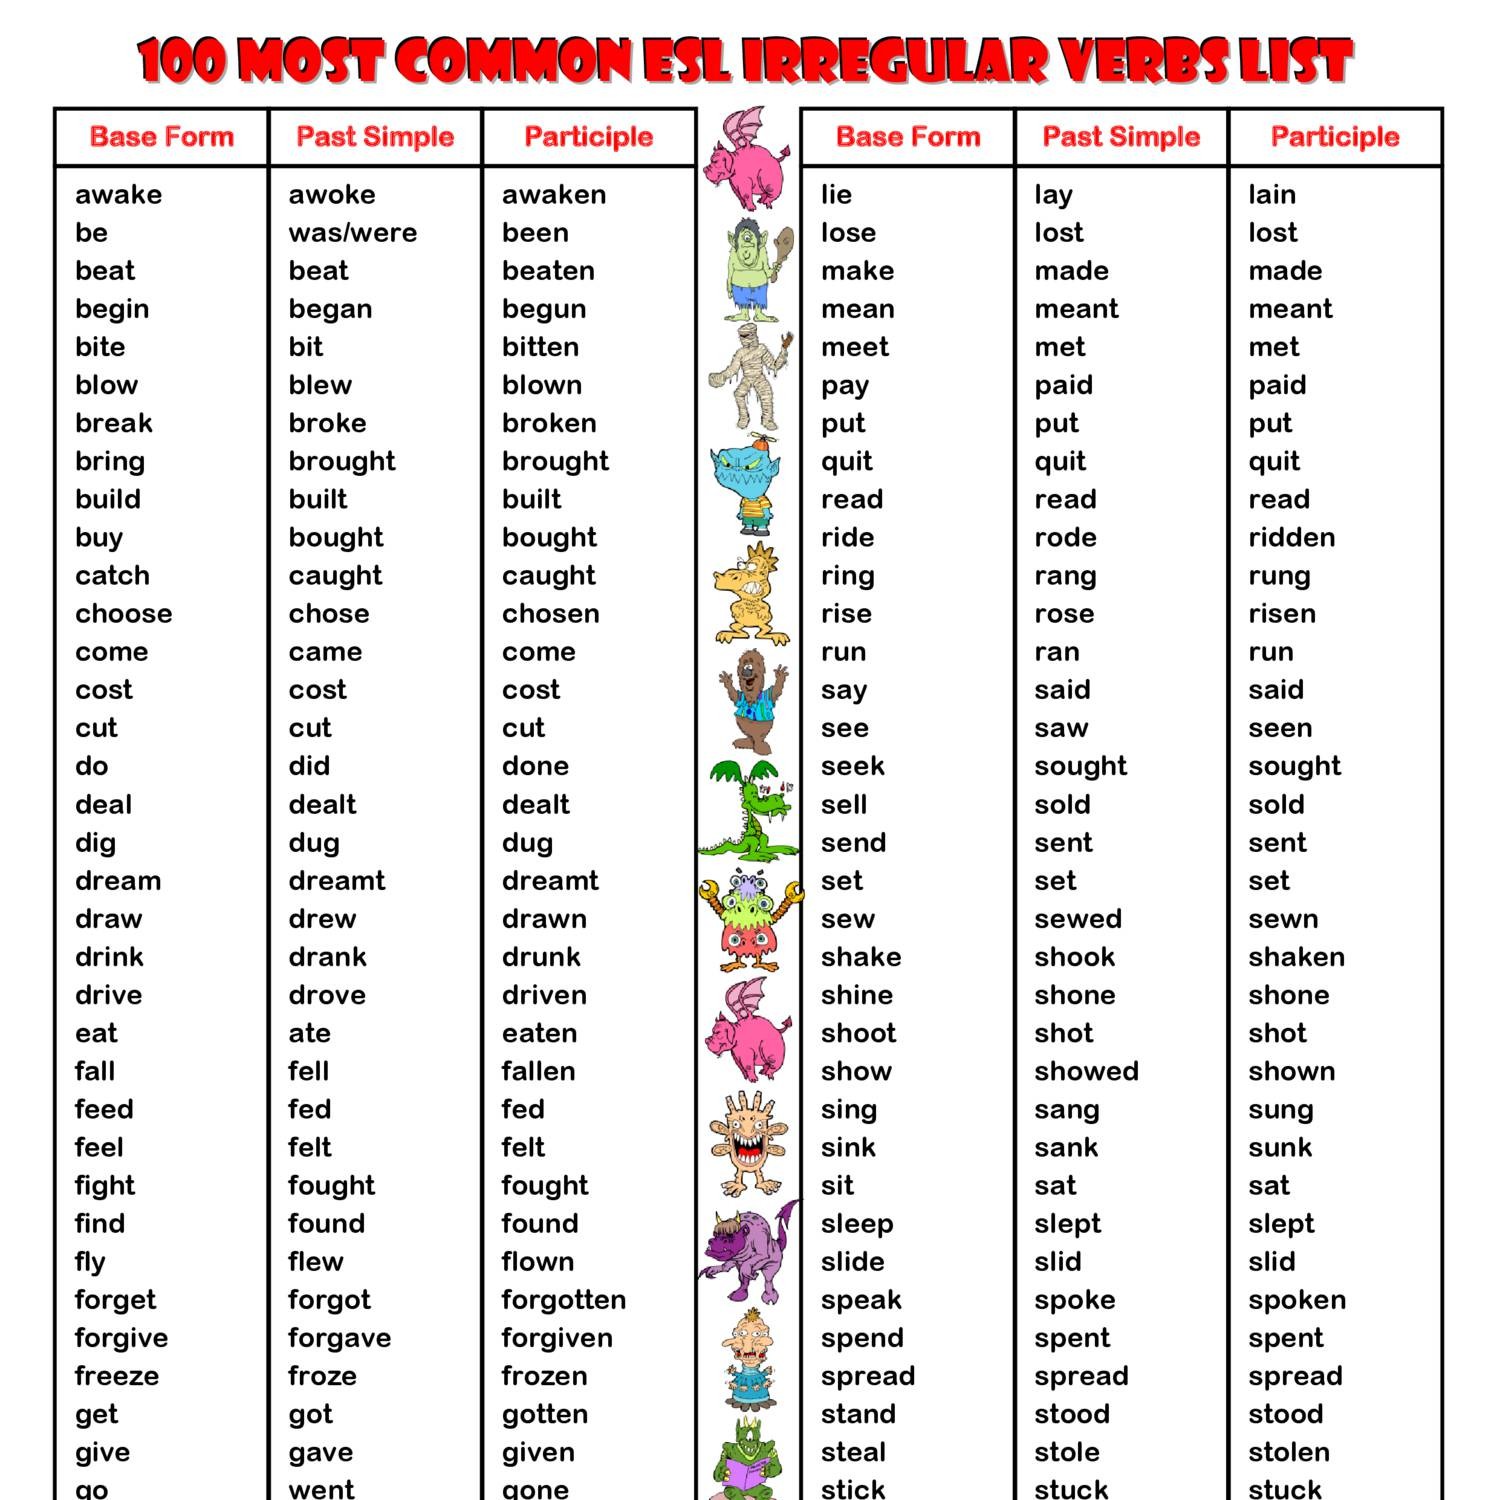 100-most-common-esl-irregular-verbs-list-pdf-docdroid